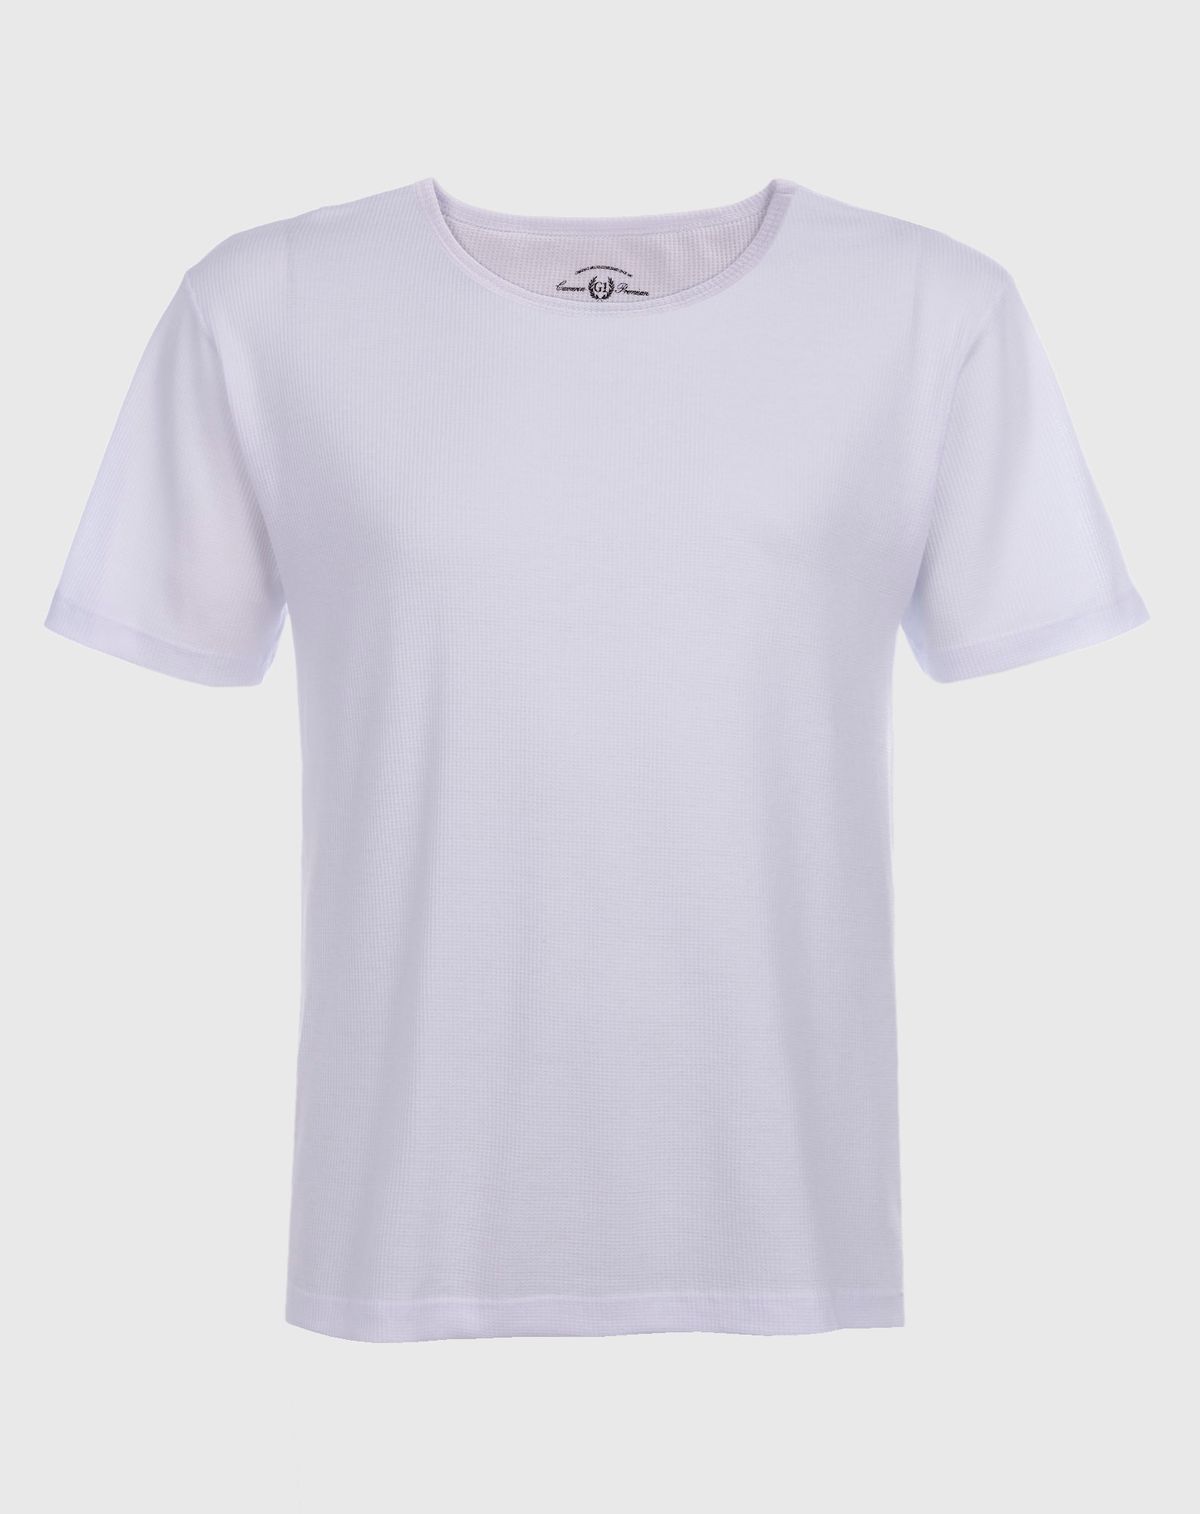 688072007-camiseta-manga-curta-plus-size-masculina-texturizada-branco-g1-a49